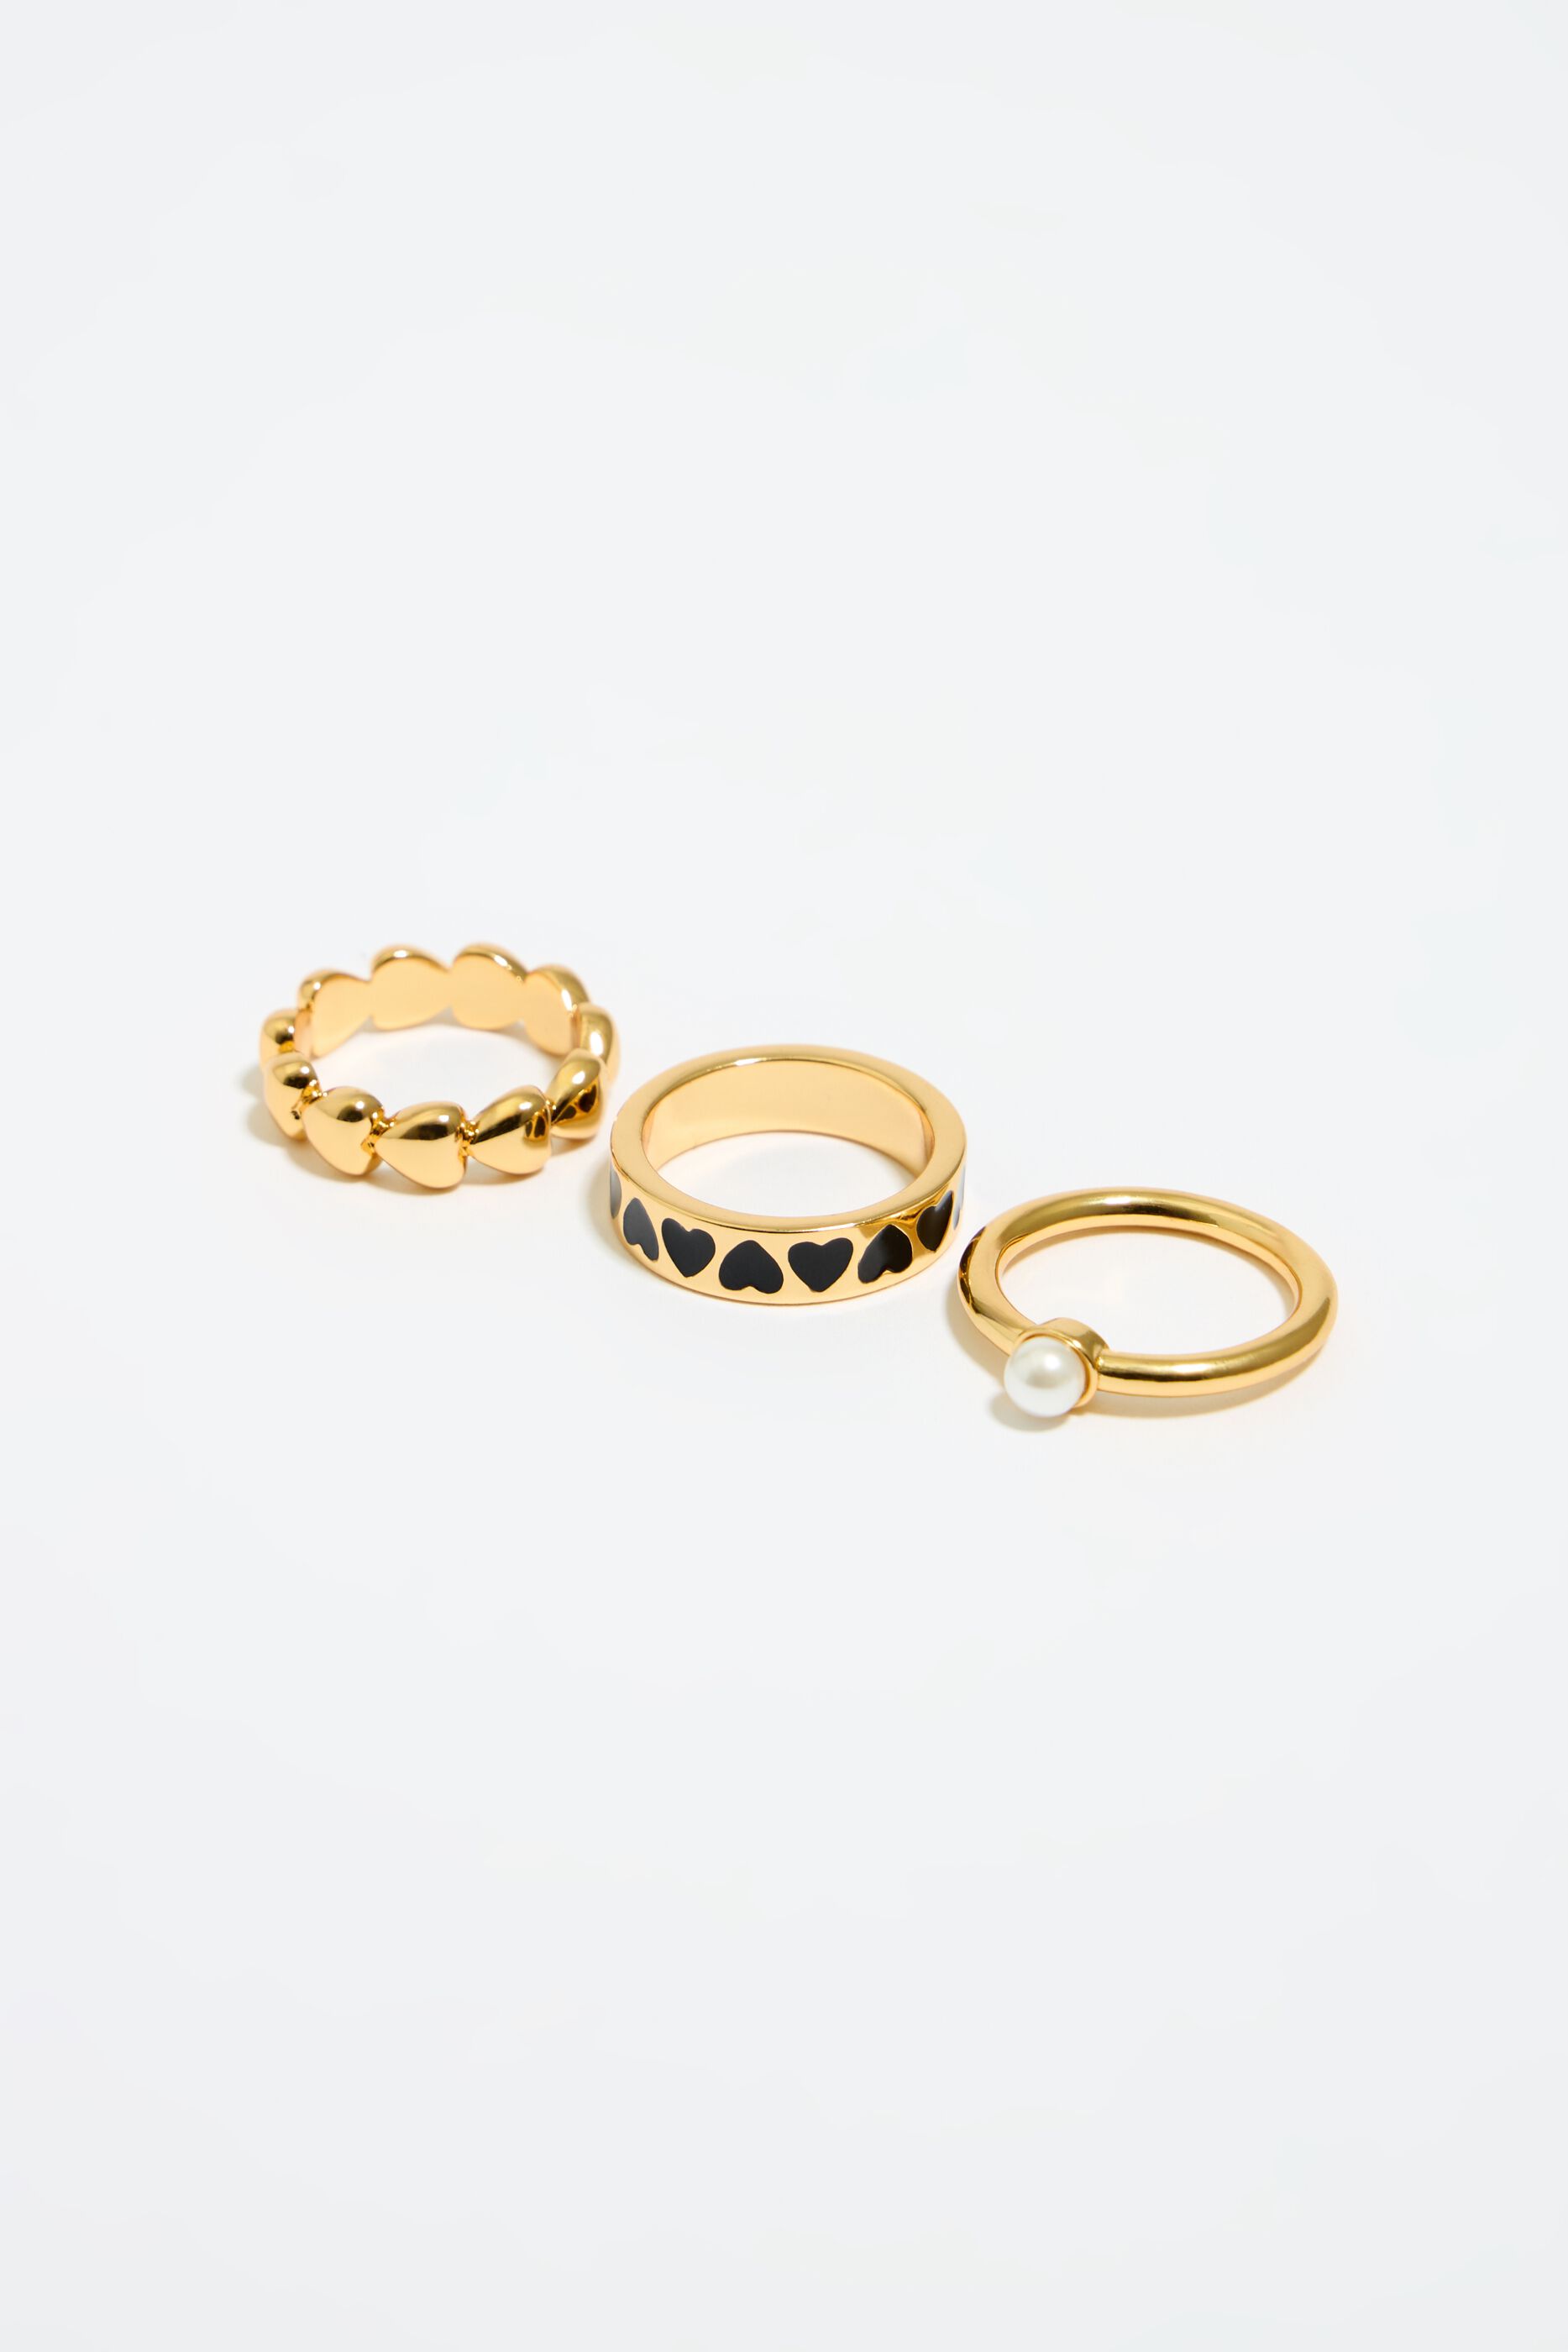 10k Gold Moissanite Women's Ring | Vansweden Jewelers